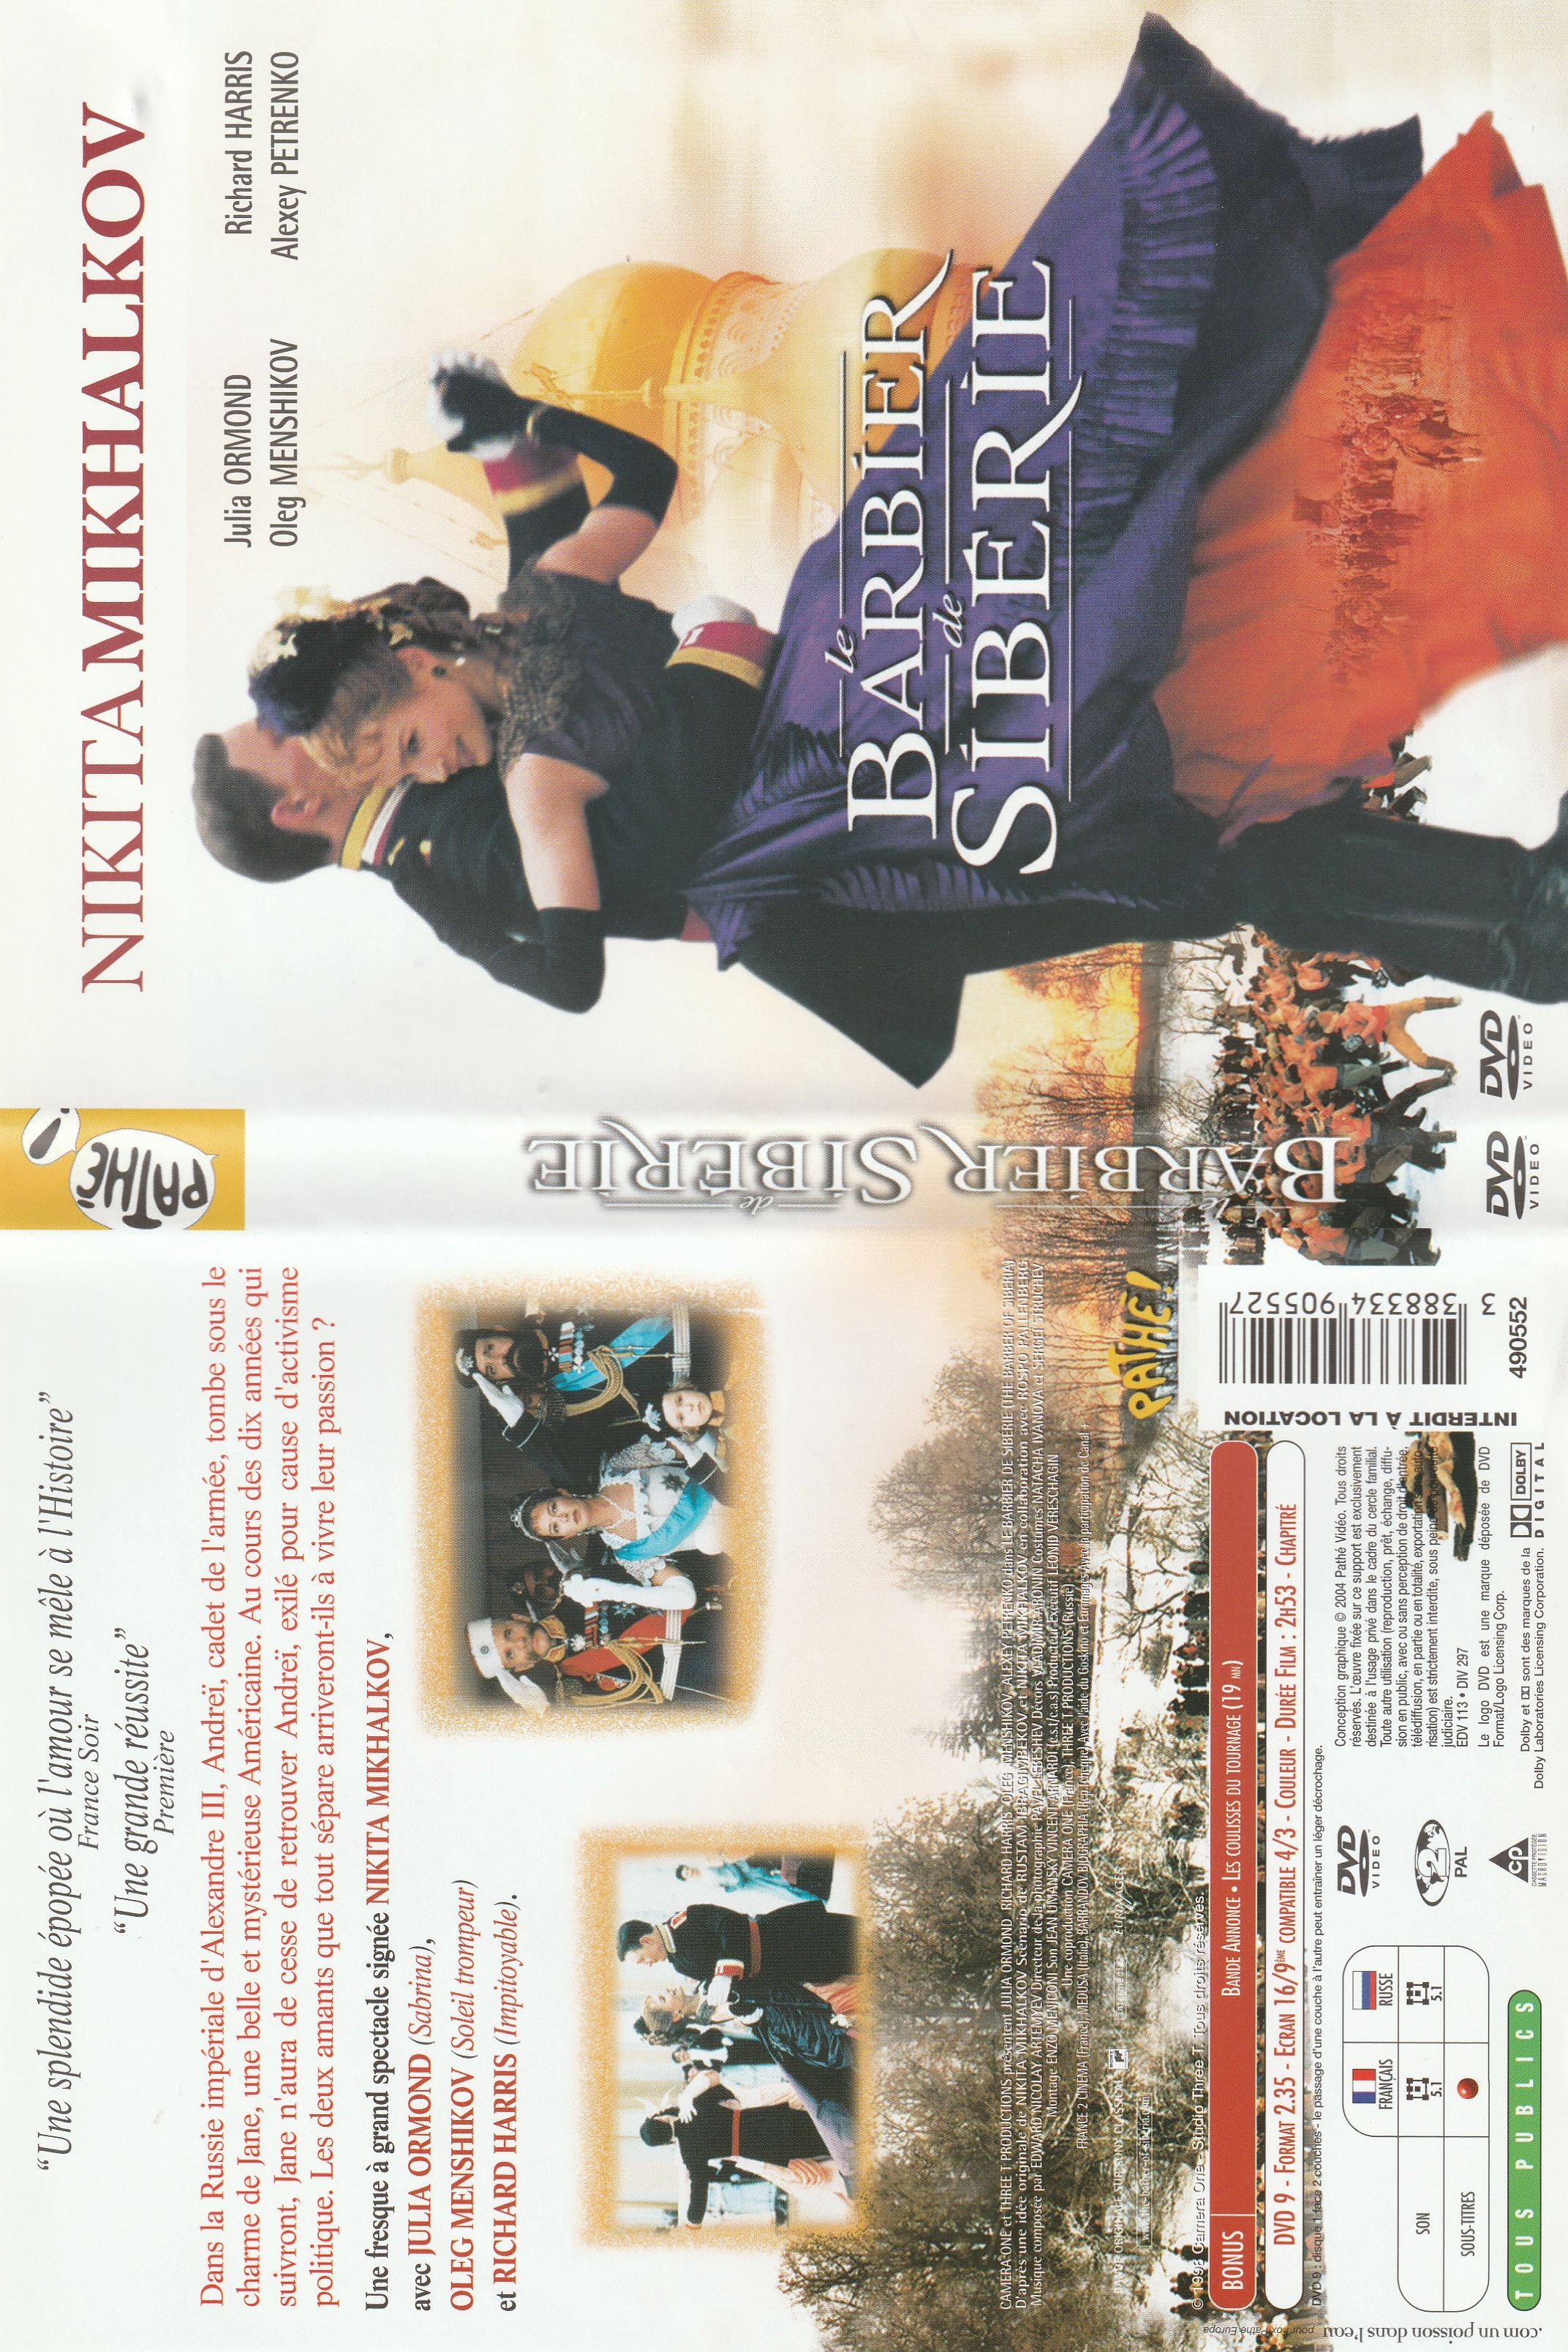 Jaquette DVD Le barbier de Siberie v2